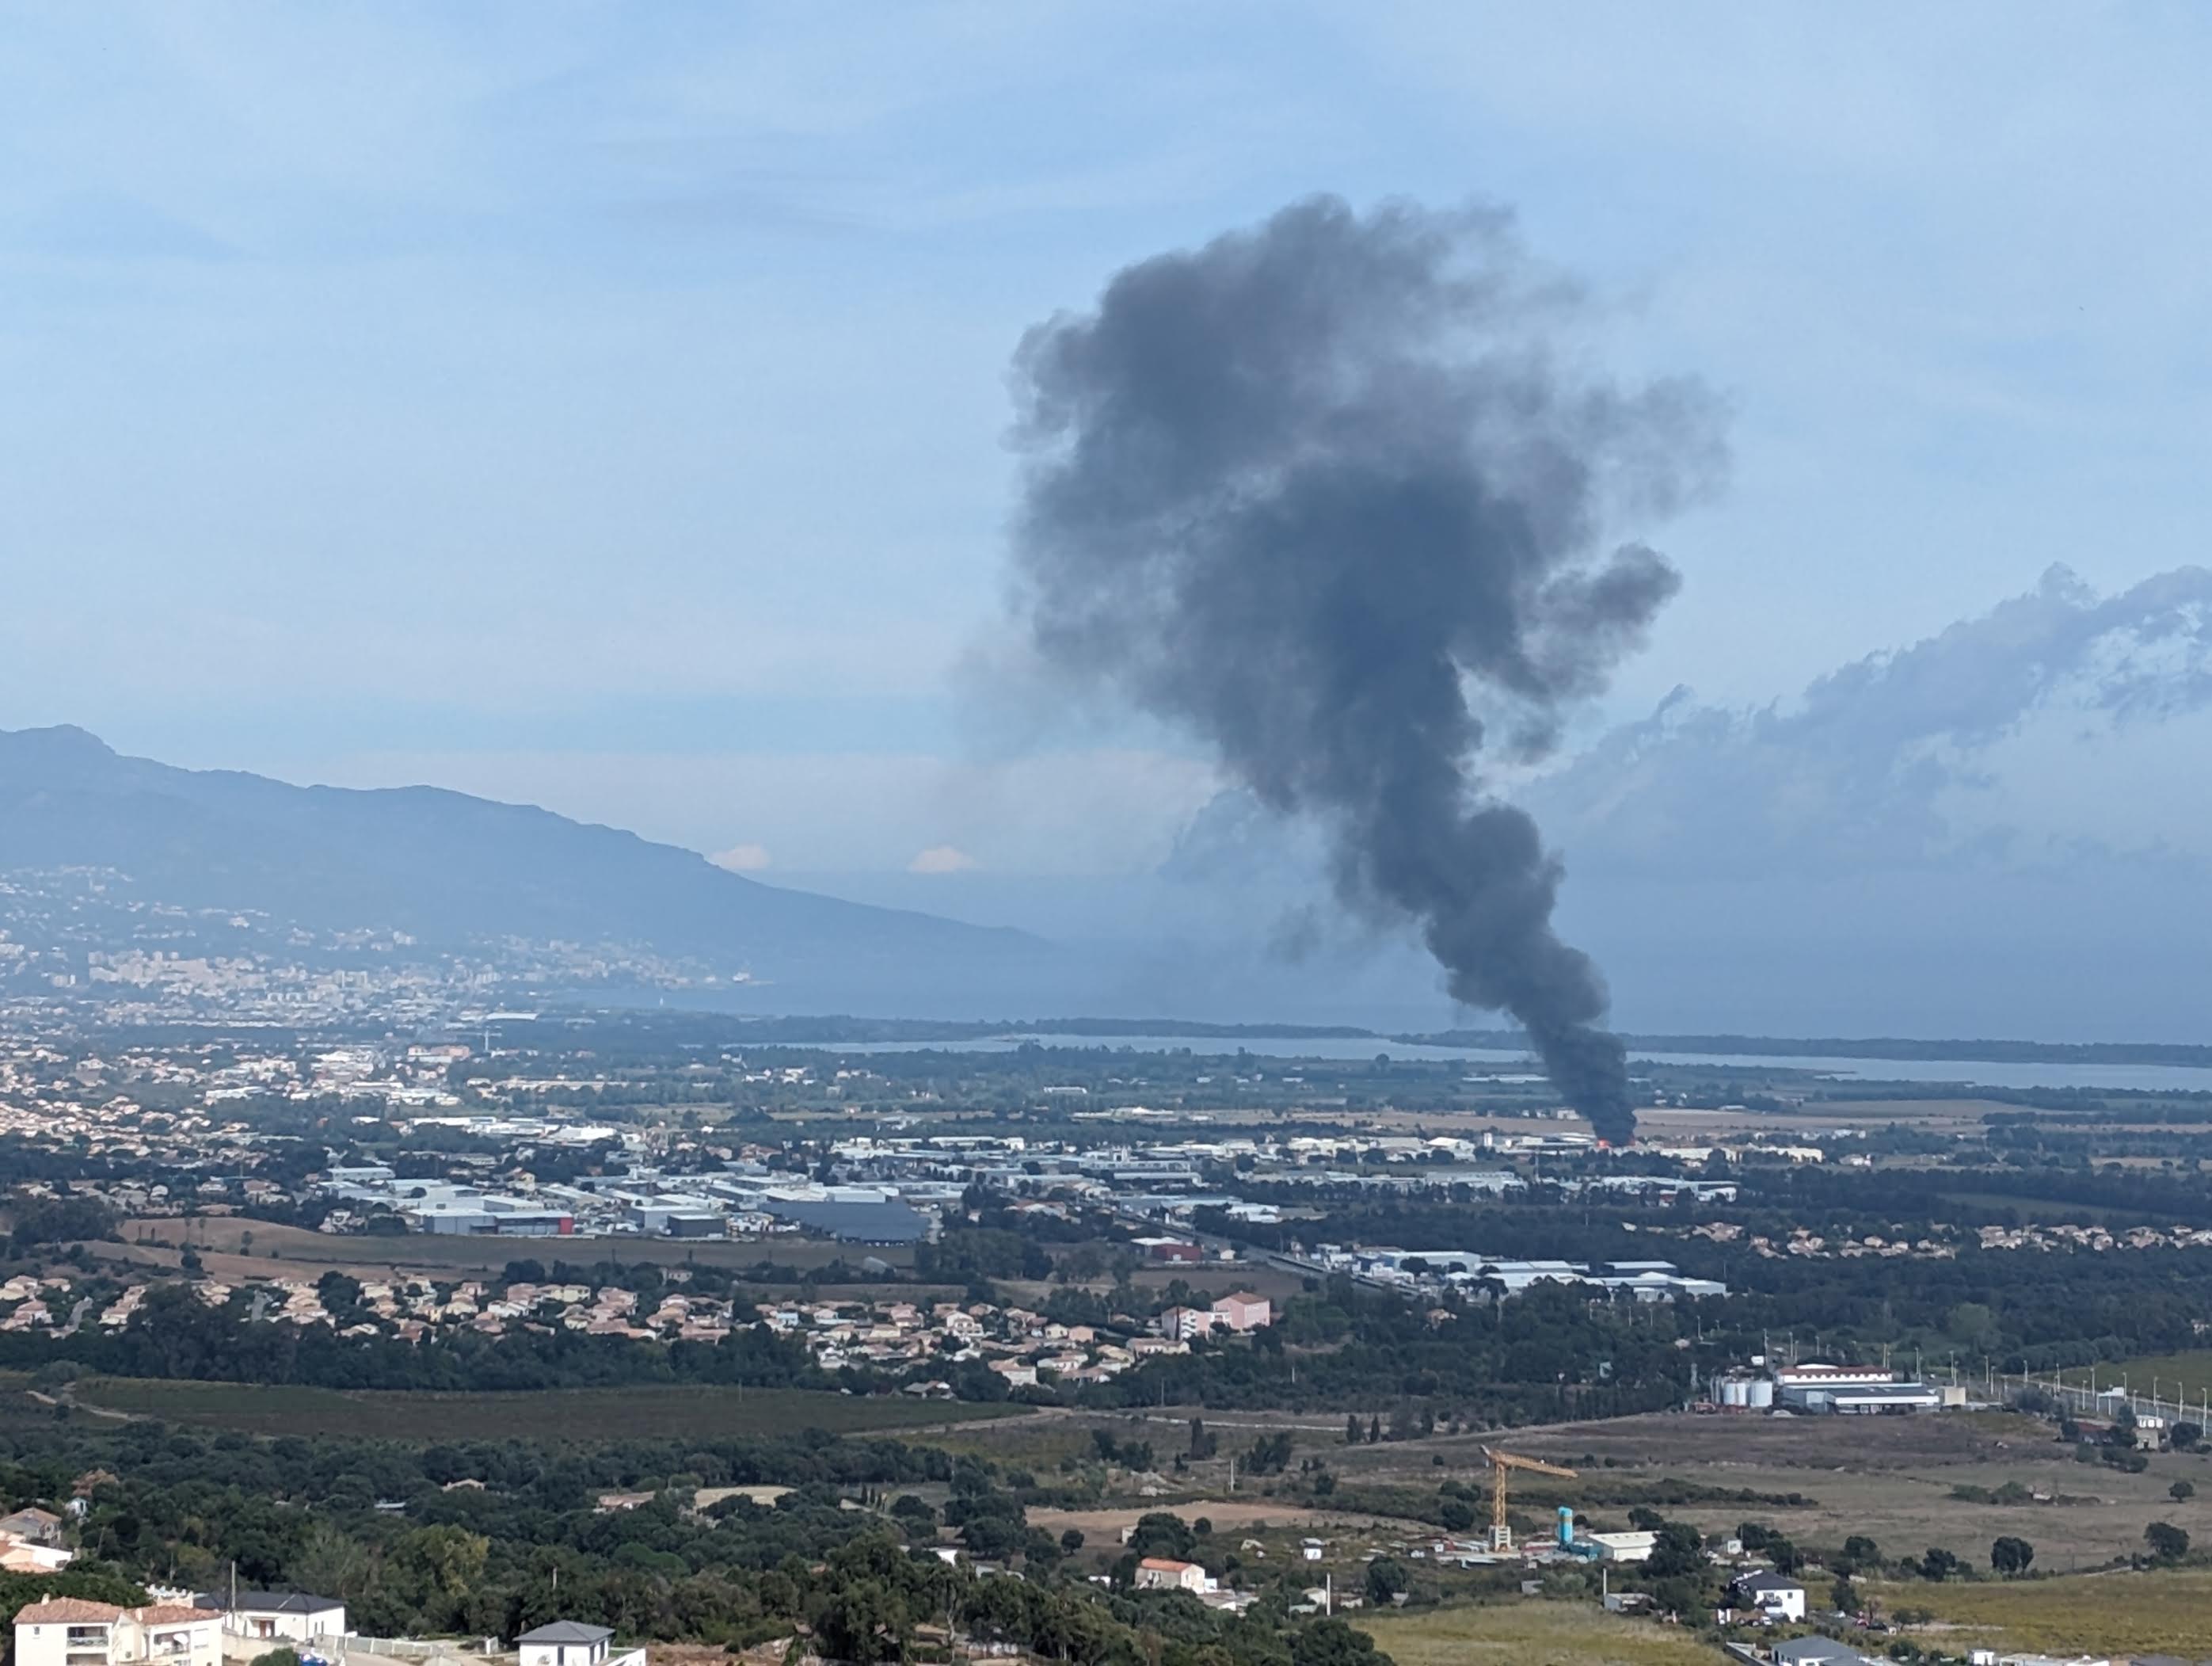 L'énorme panache de fumée occasionné par l'incendie était visible de loin (Photo Jacques Barrière)